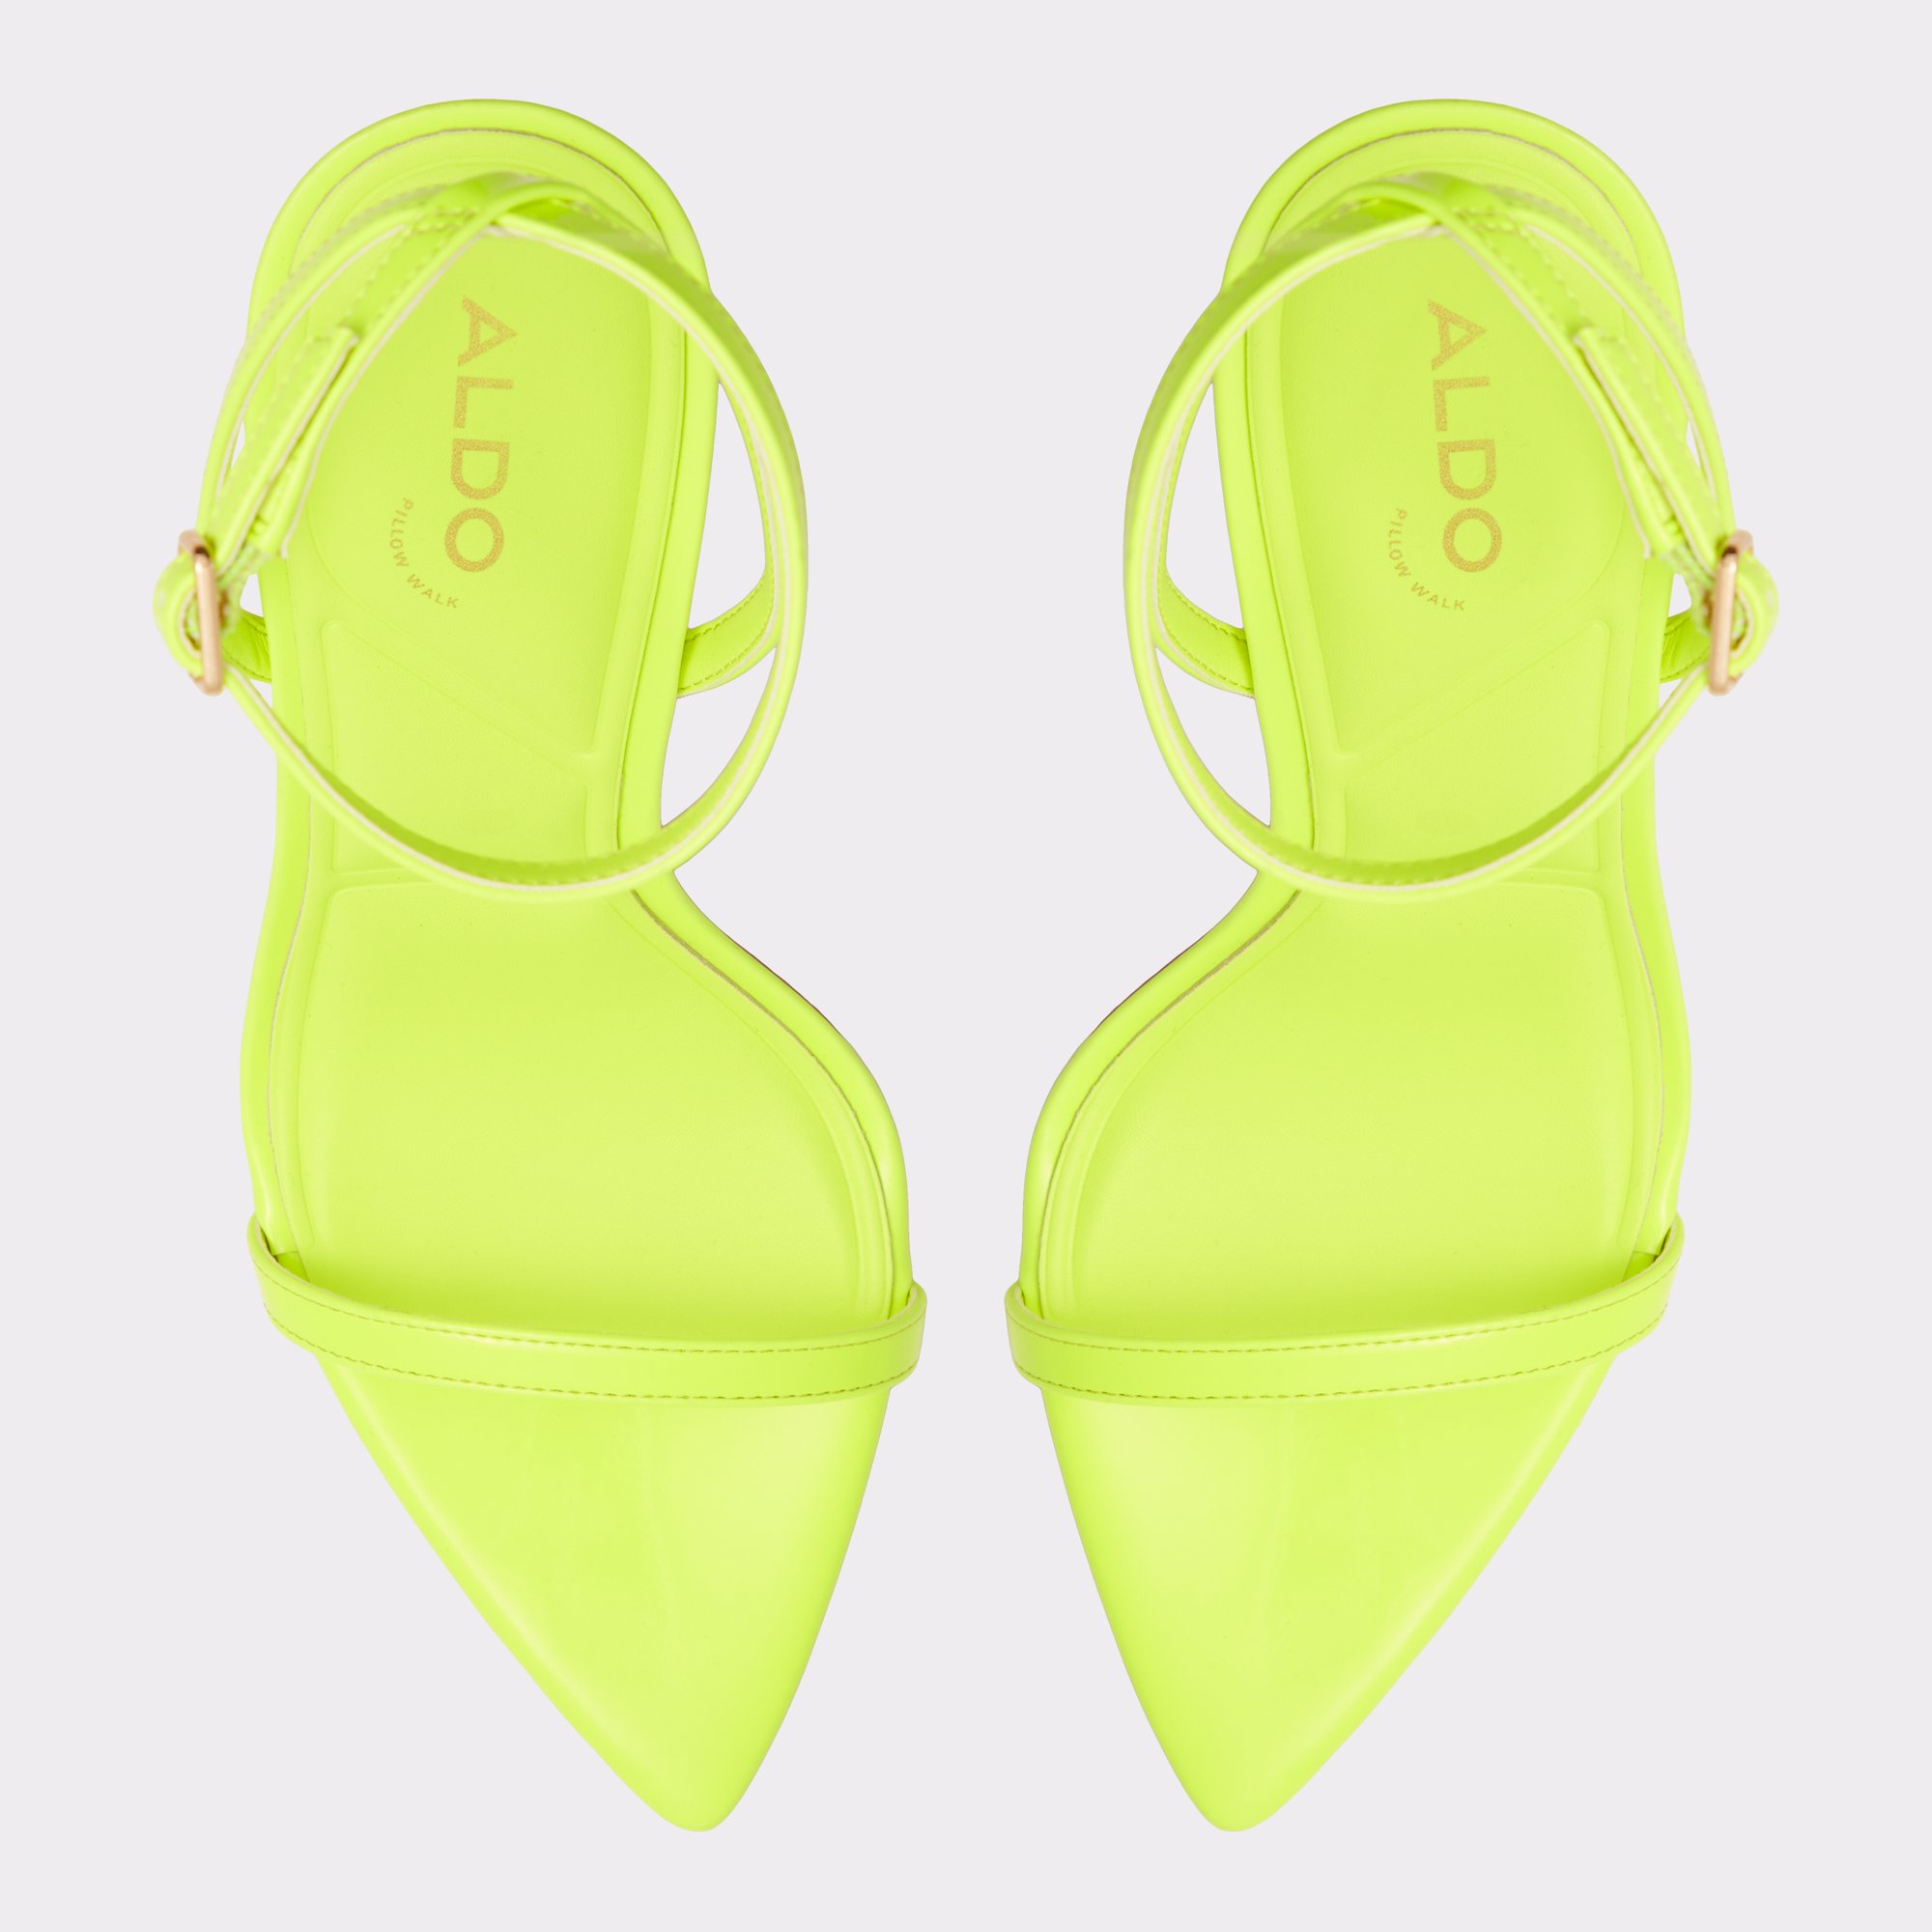 Tulipa Bright Yellow Women's Strappy sandals | ALDO US